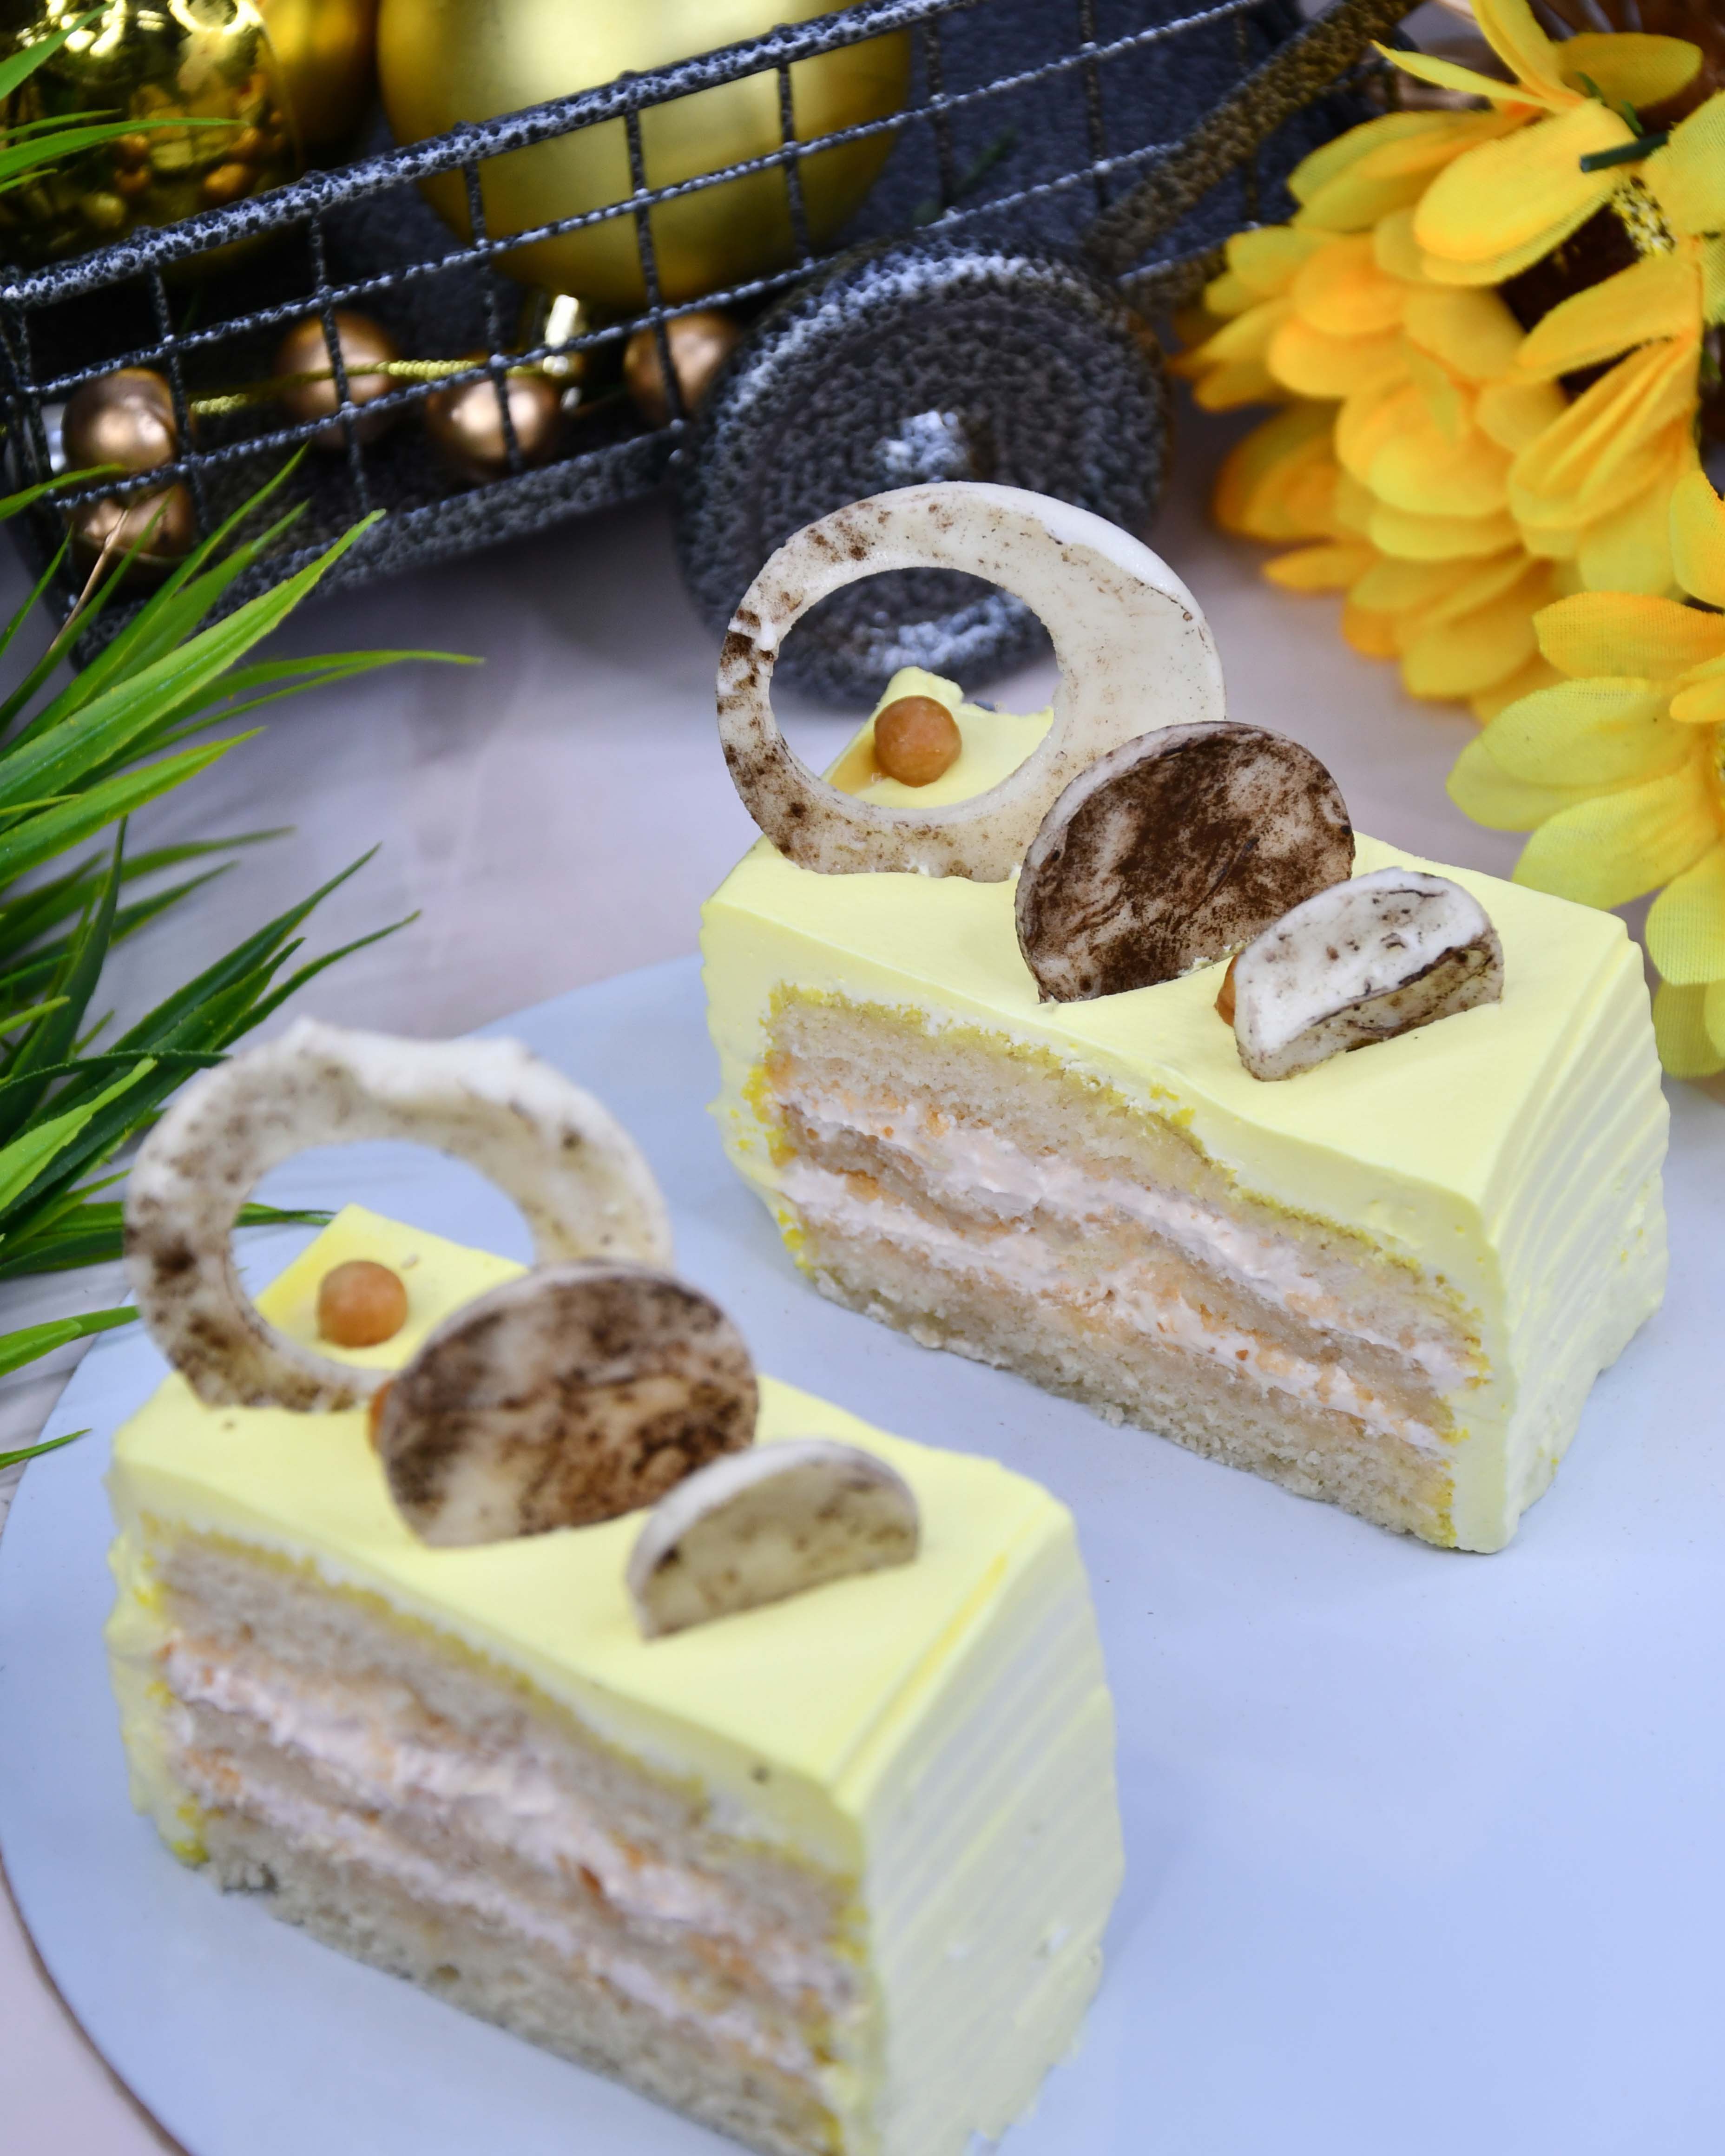 Hazelnut mousse cake stock image. Image of present, dessert - 2949257